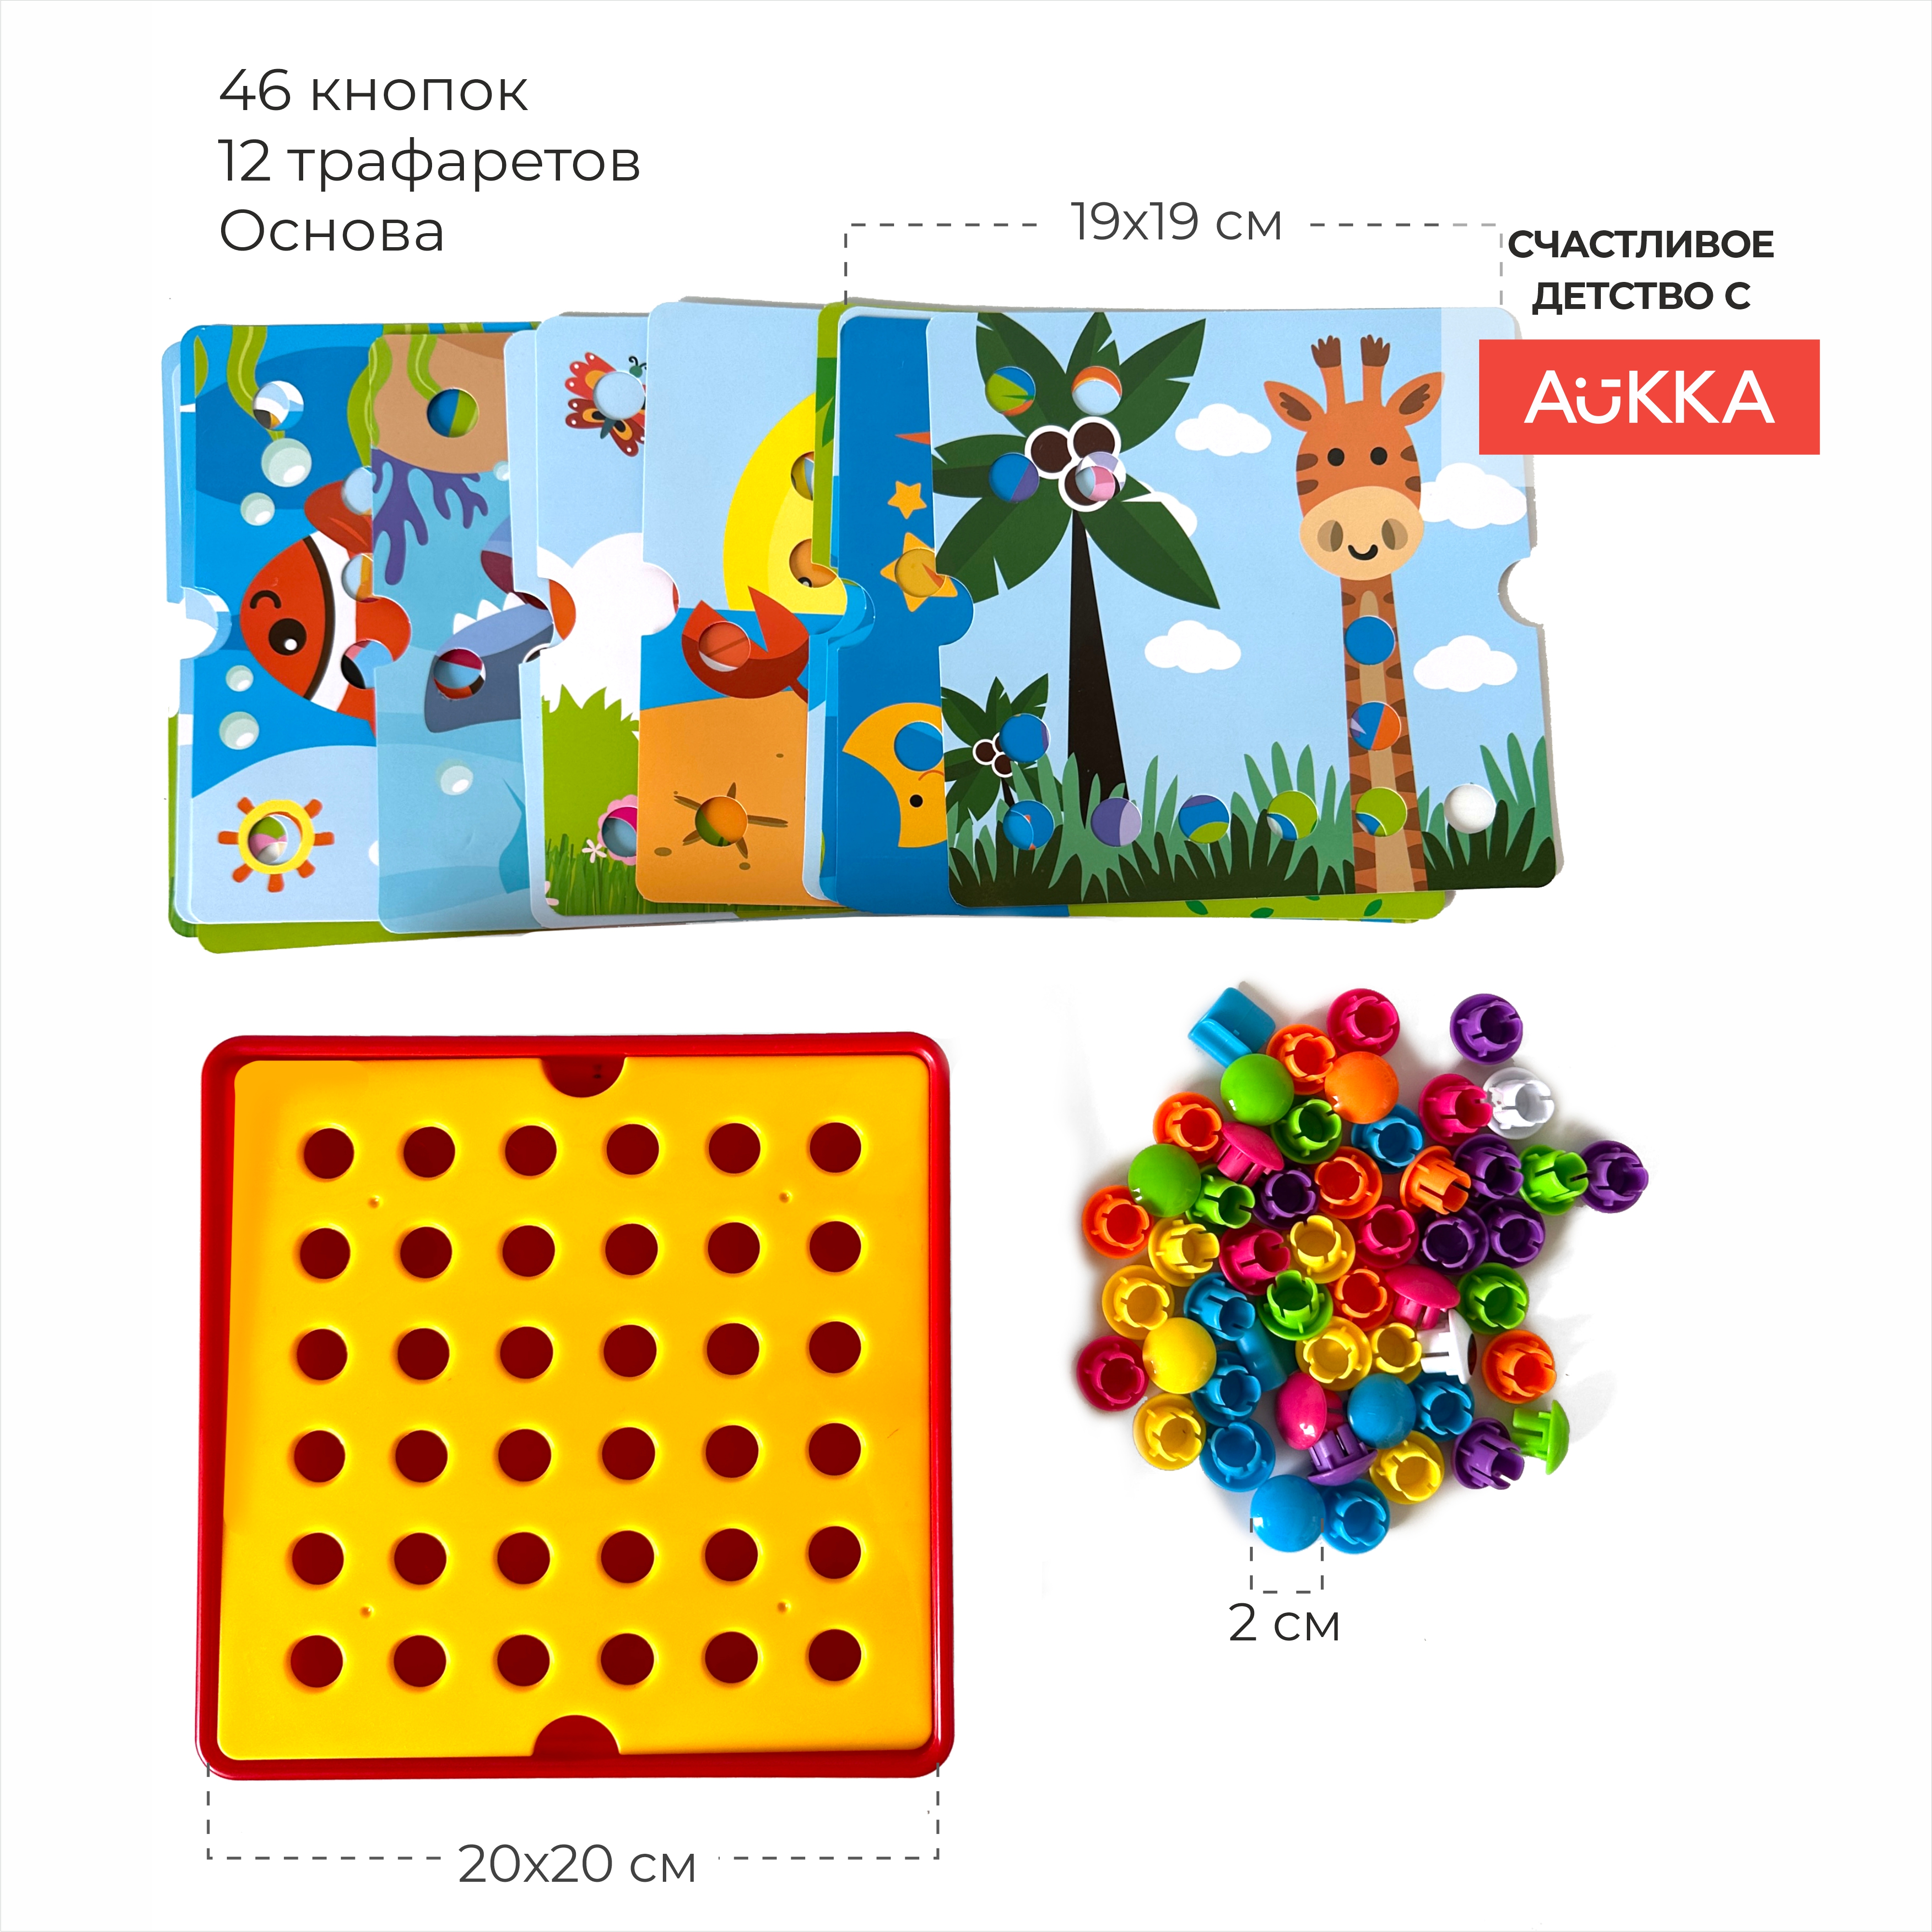 Мозаика AUKKA развивающая игрушка для малышей в подарок - фото 4